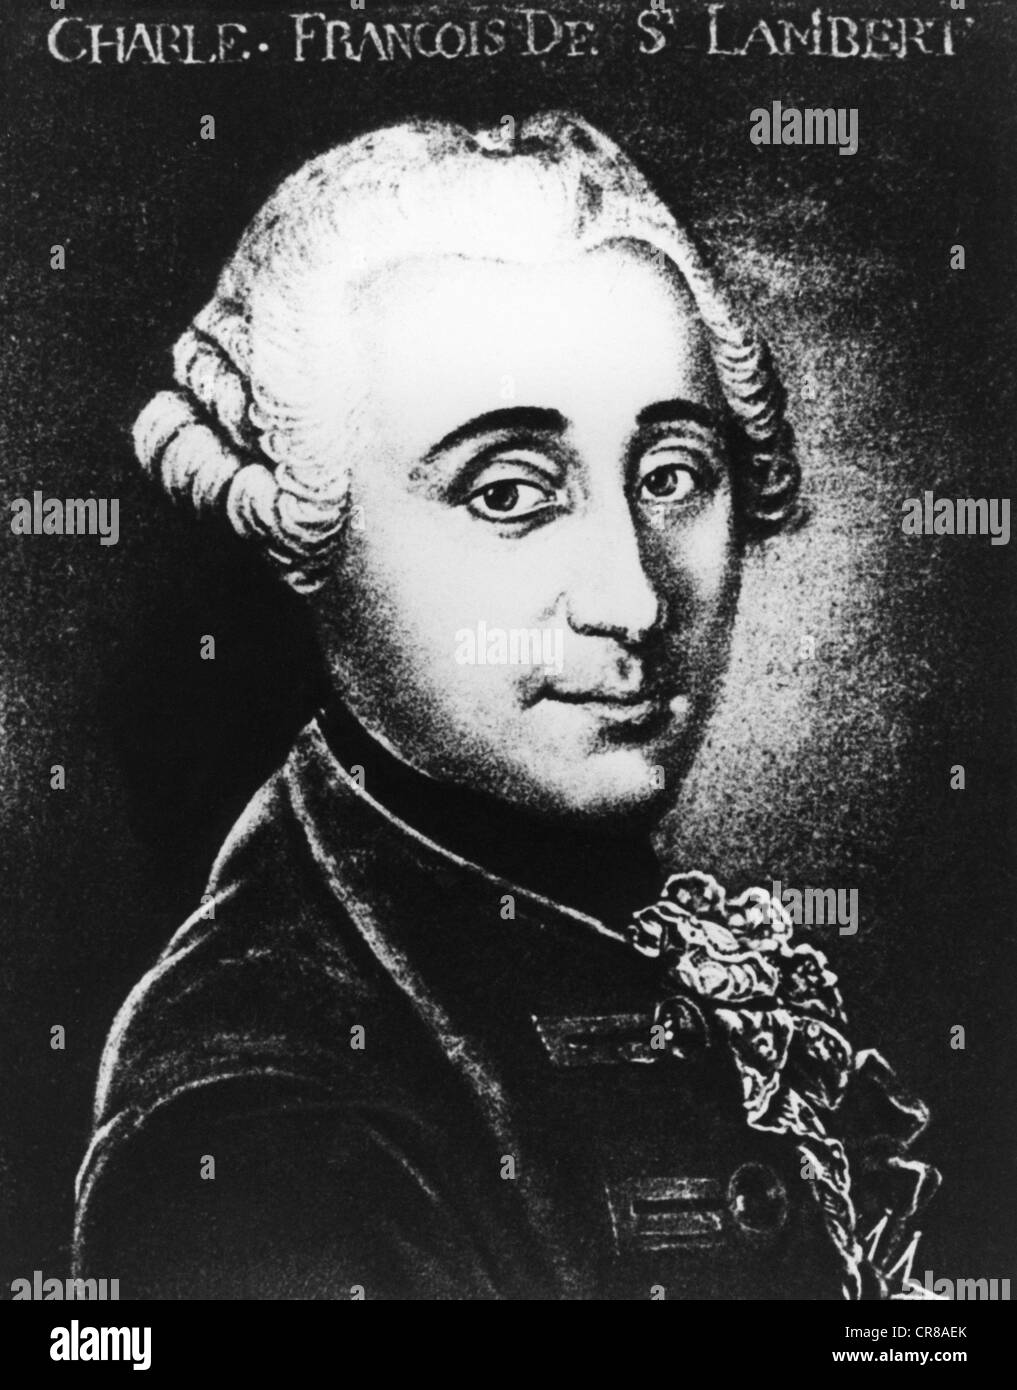 Saint-Lambert, Jean-François de, 16.2.1717 - 9.2.1803, officier français et philosophe, portrait, après peinture, 18e siècle, l'artiste n'a pas d'auteur pour être effacé Banque D'Images